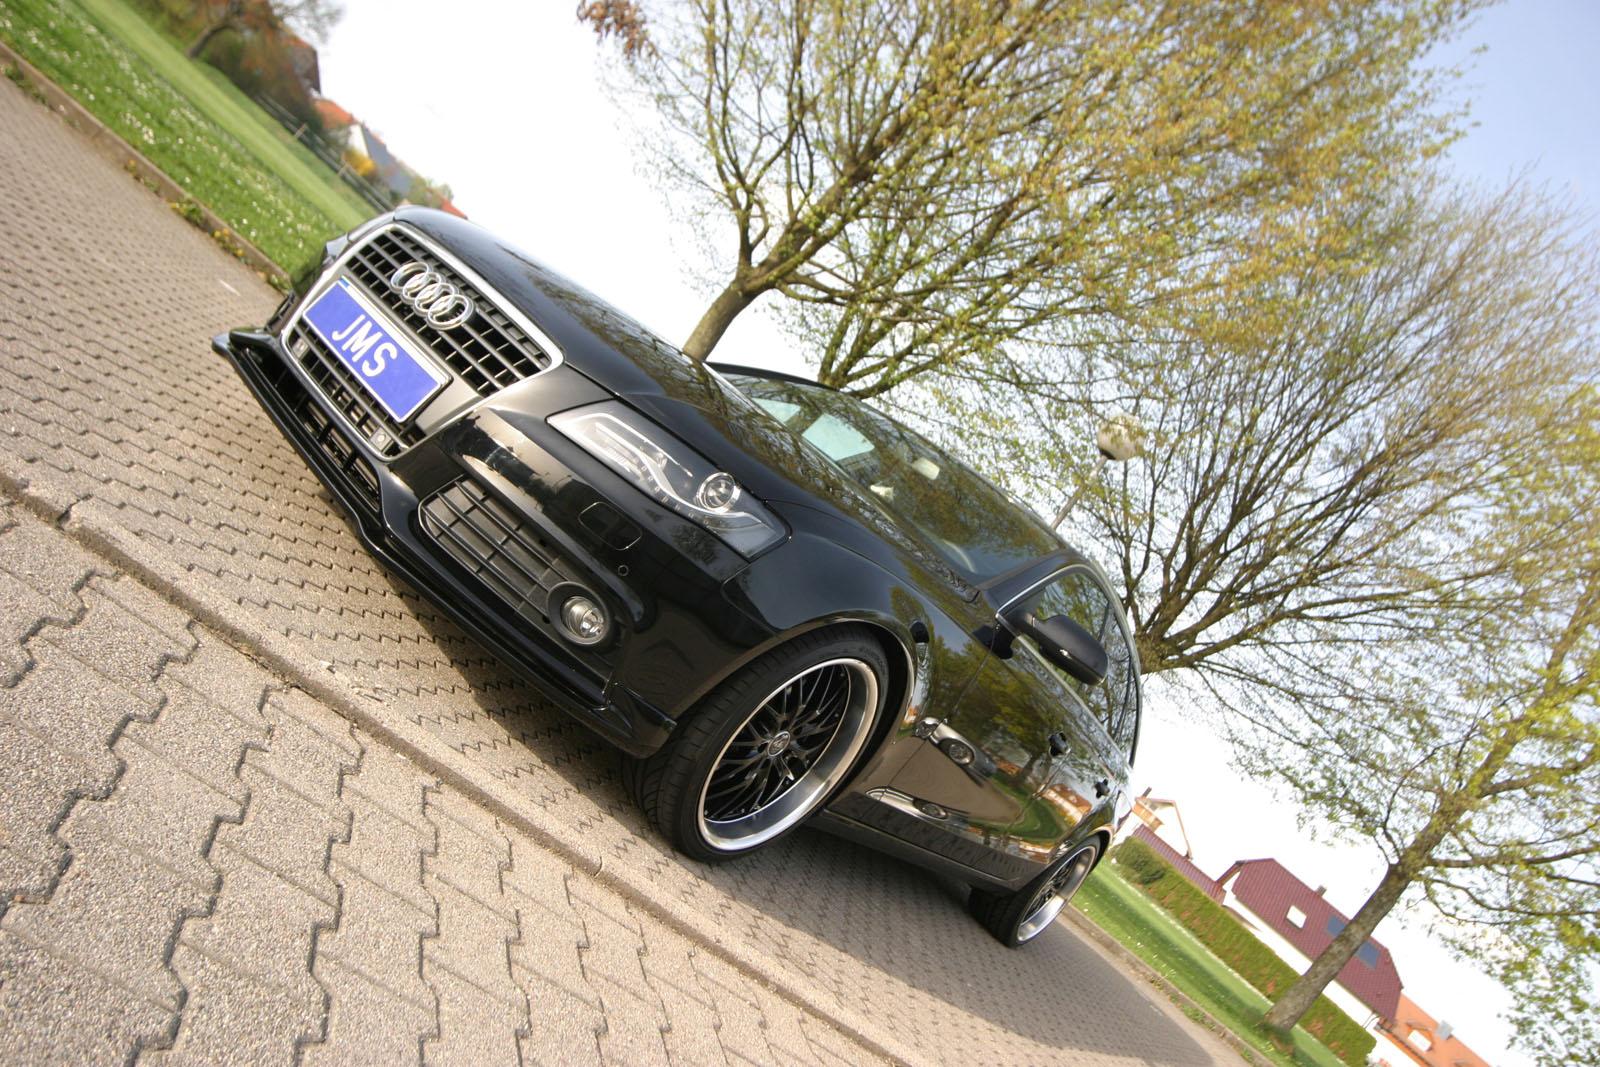 JMS  Audi A4